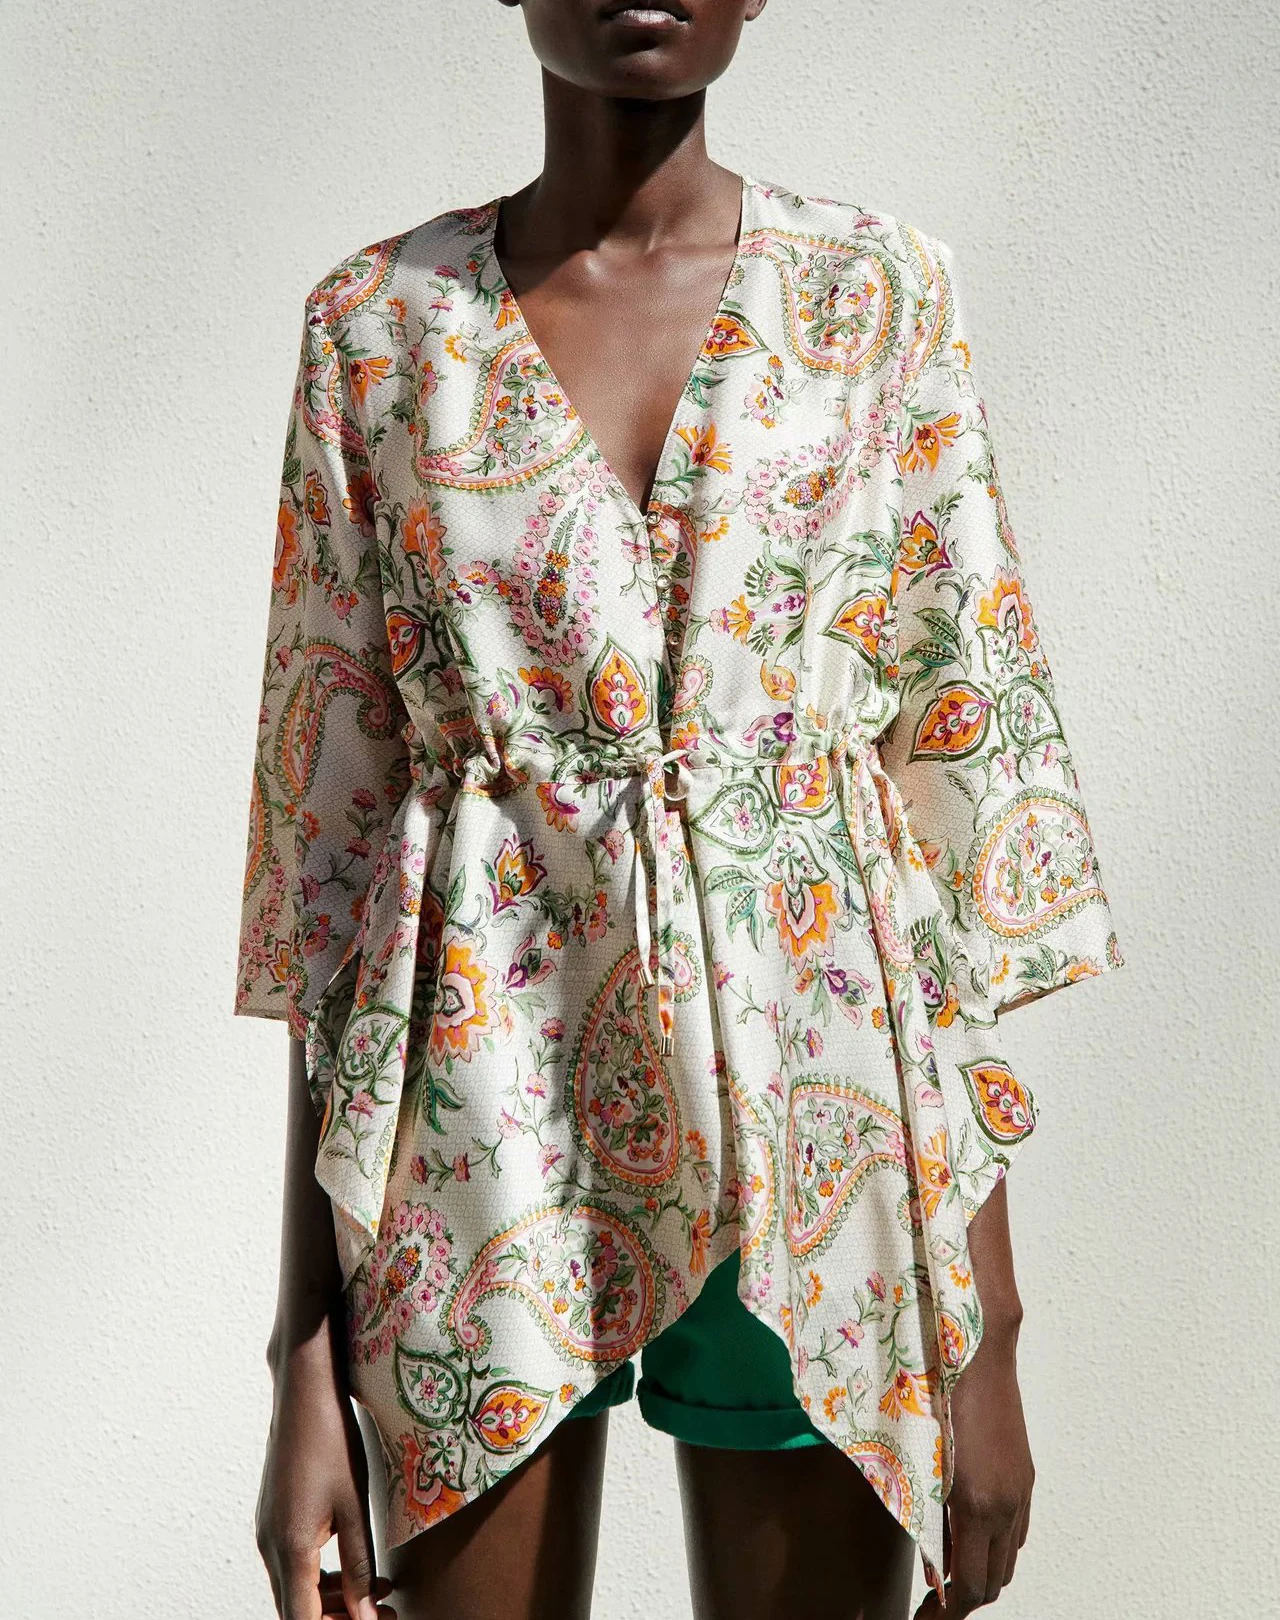 Фото Асимметричная блузка с цветочным принтом рубашка большого размера Блузка Топ